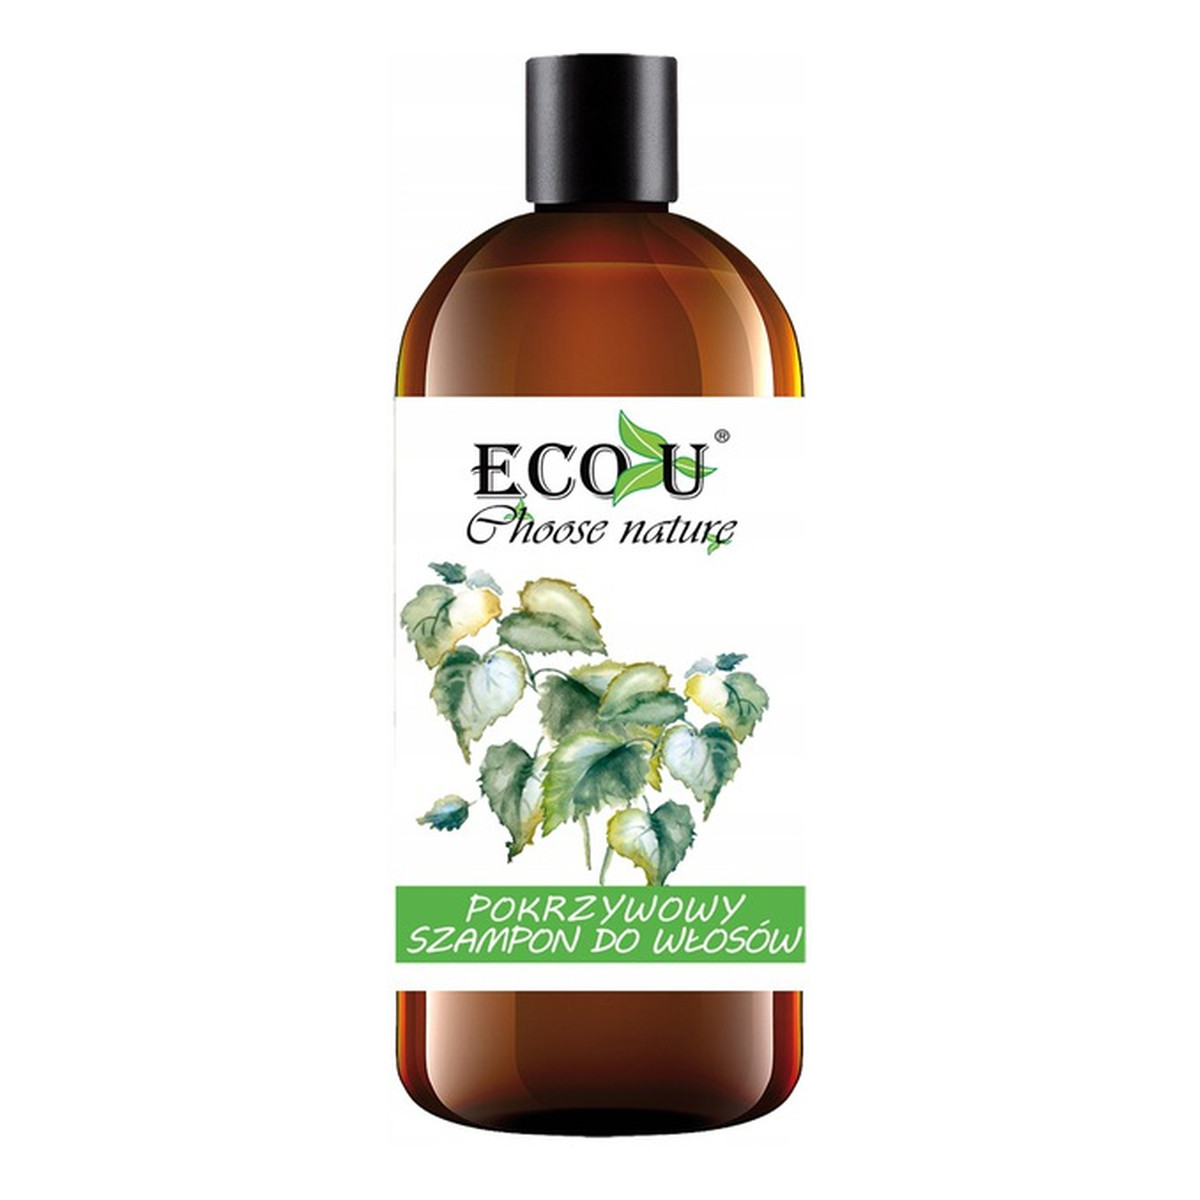 ECO-U Pokrzywowy szampon do każdego rodzaju włosów 500ml